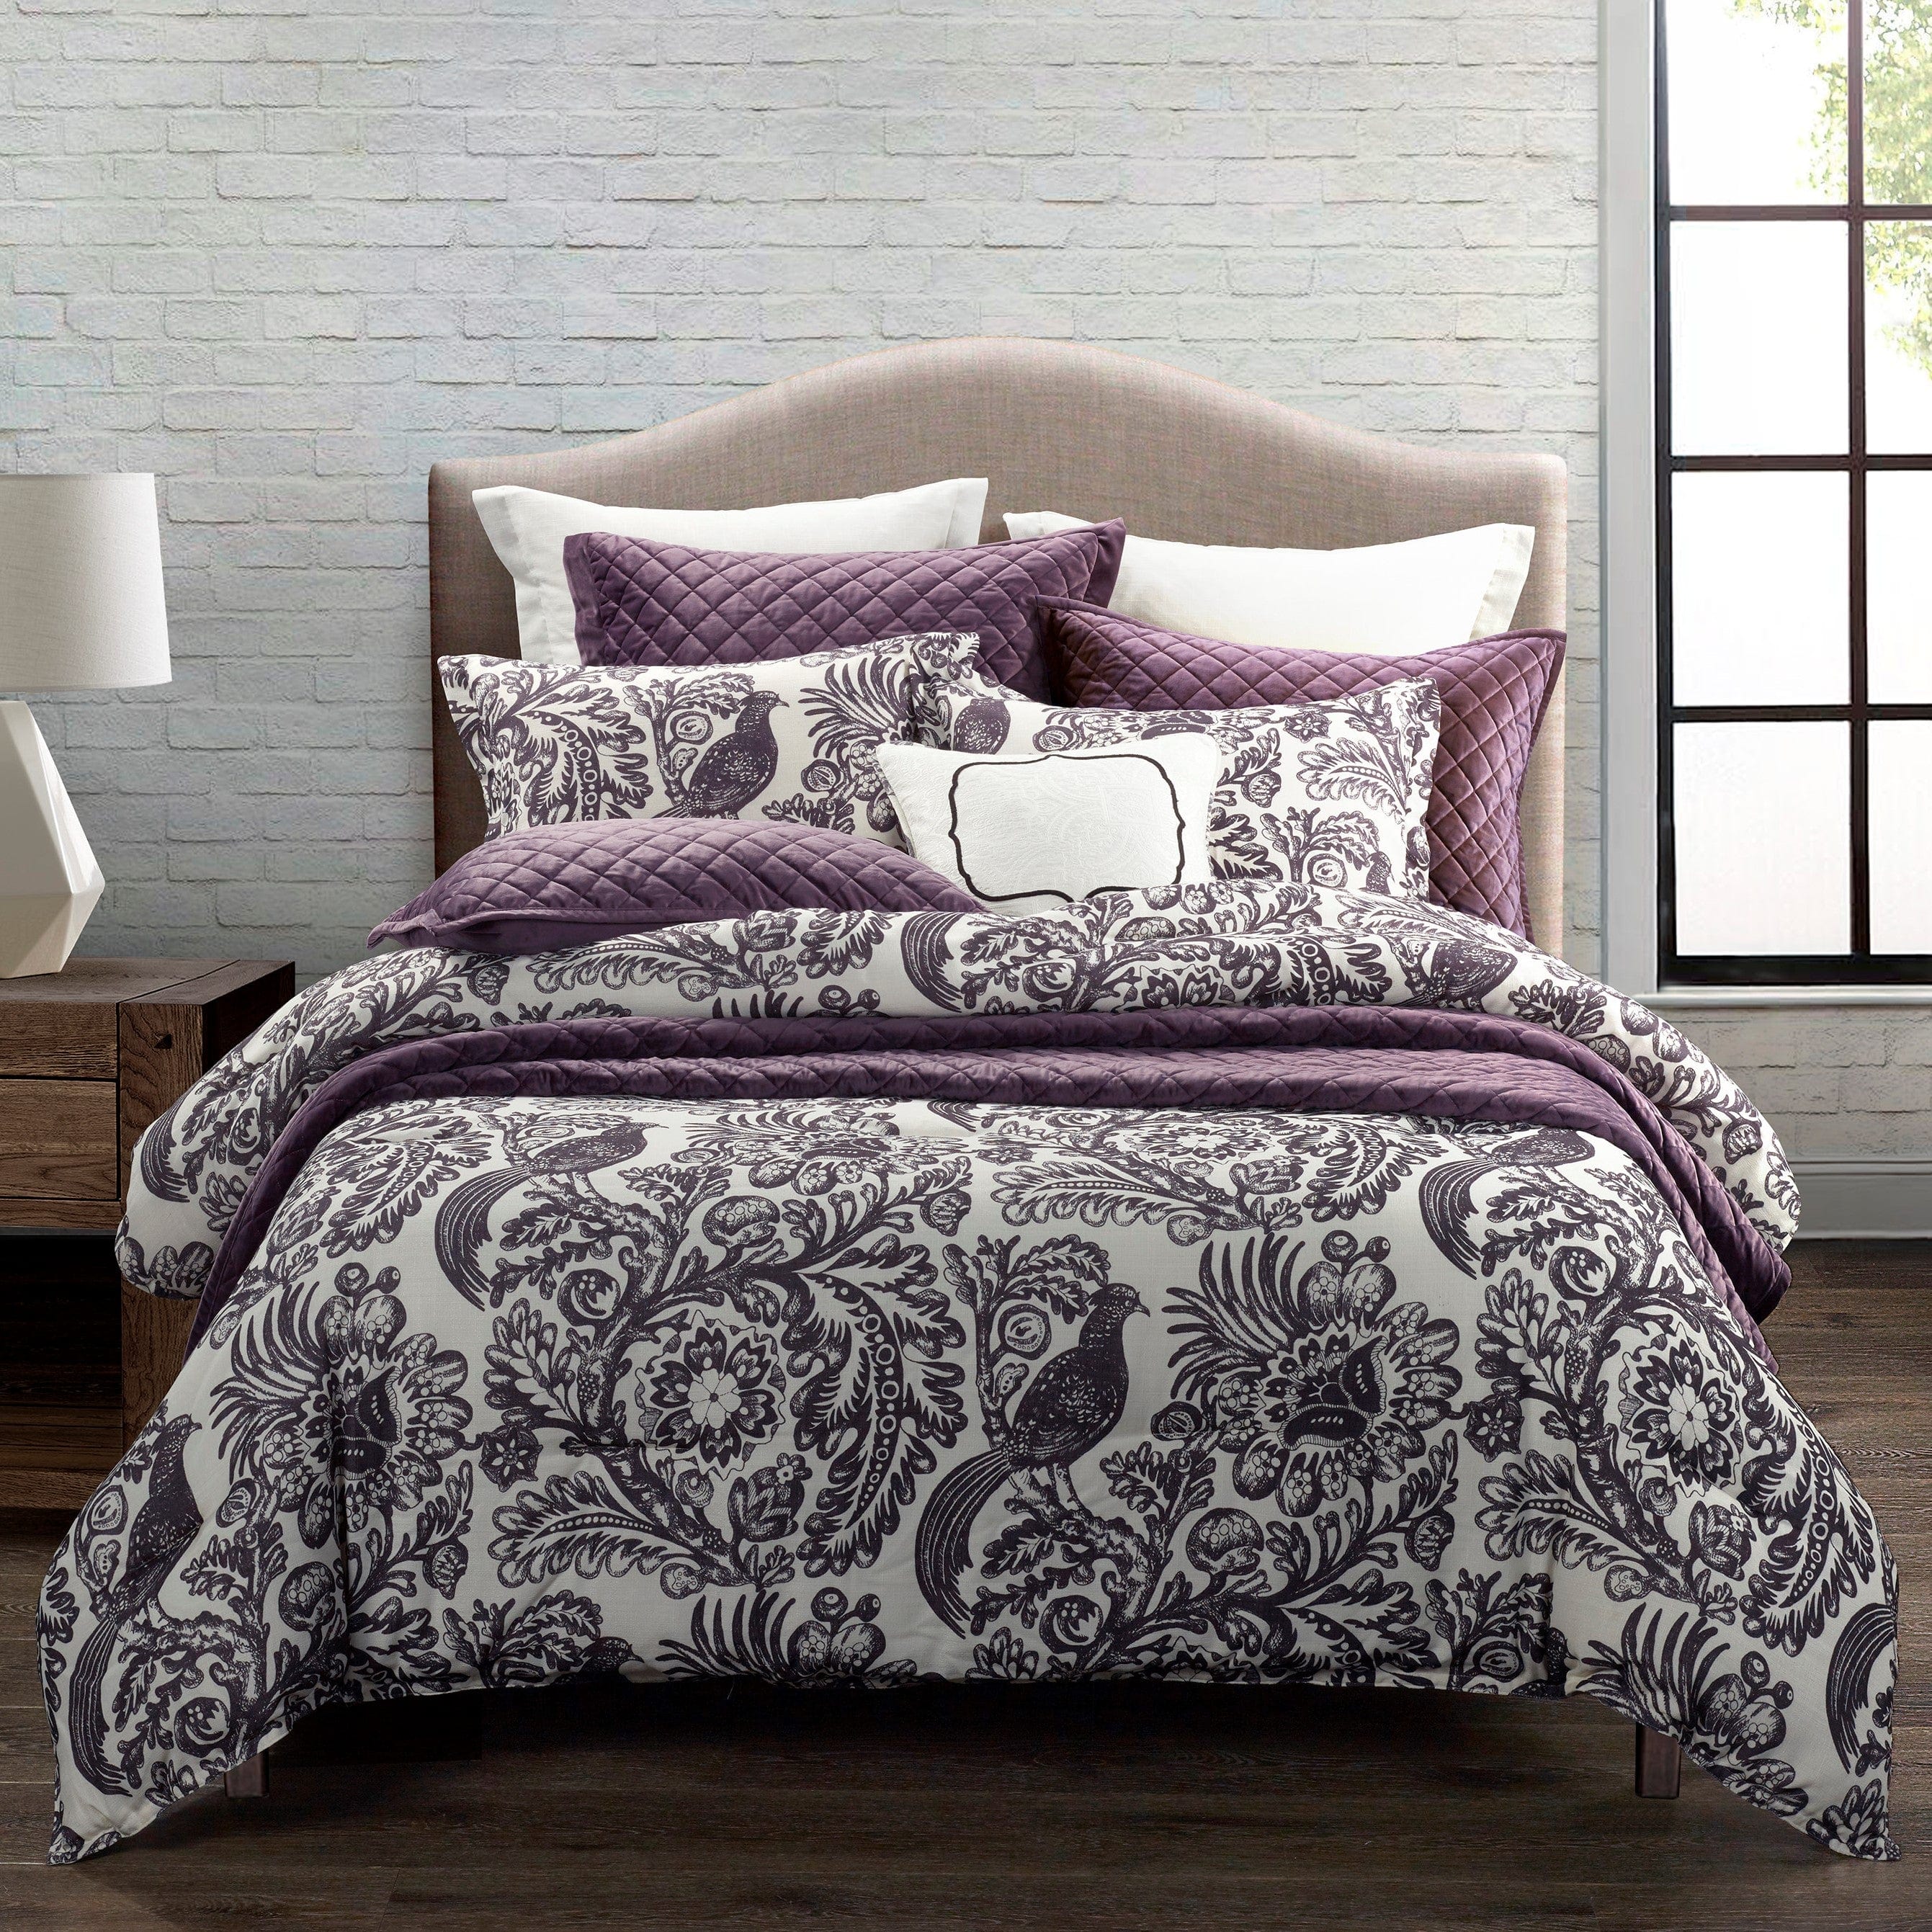 Grey Floral Comforter